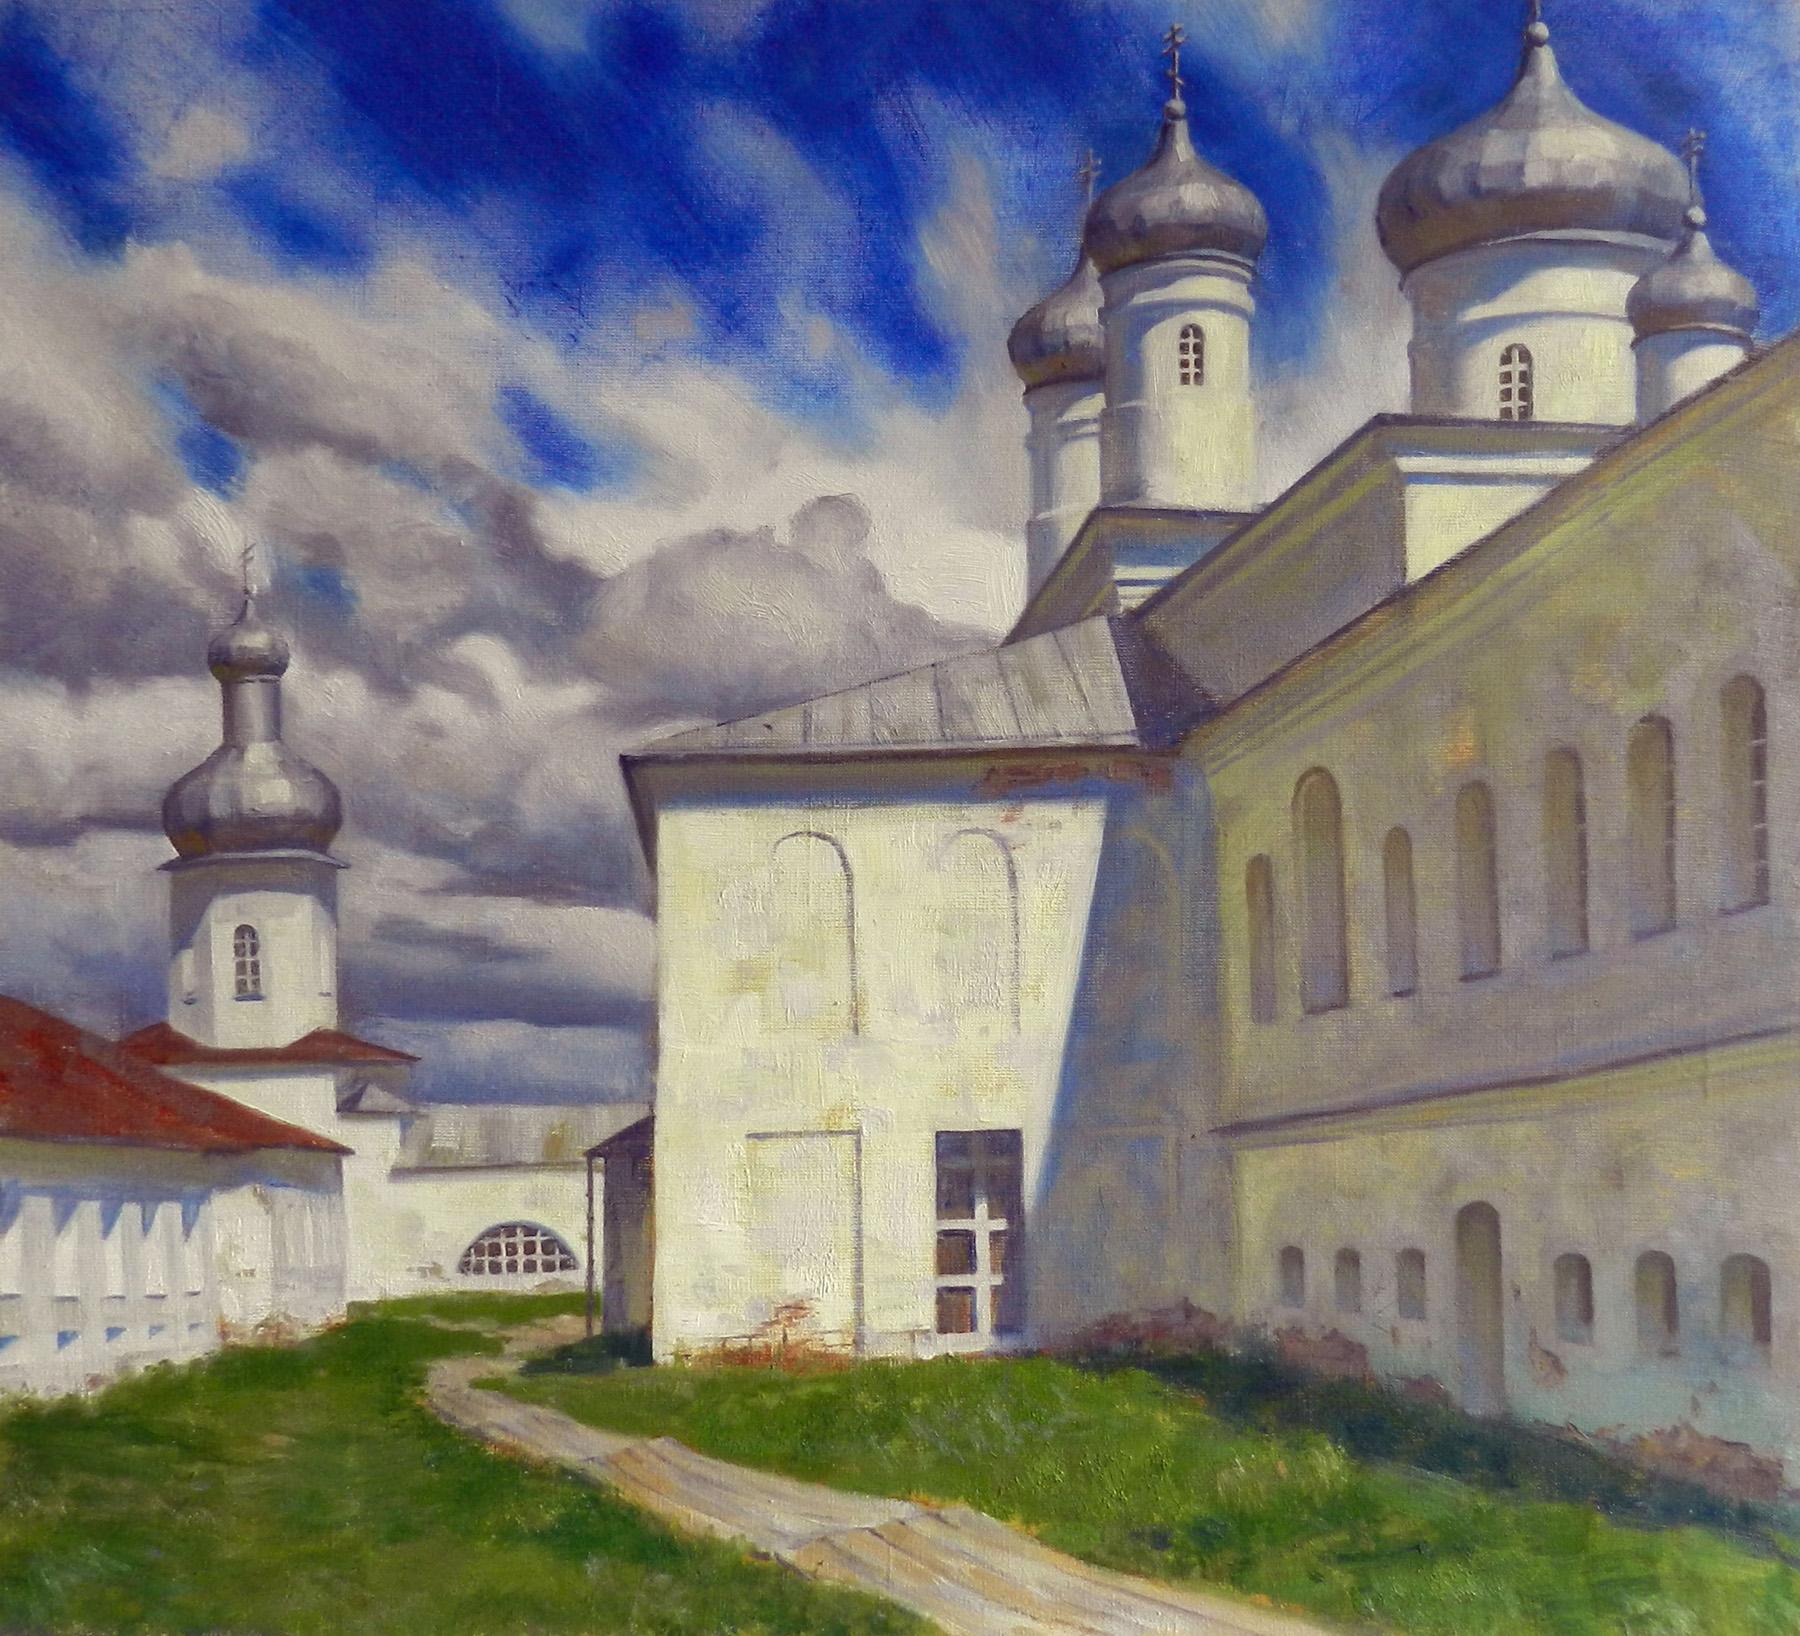 Юрьев монастырь. Original modern art painting